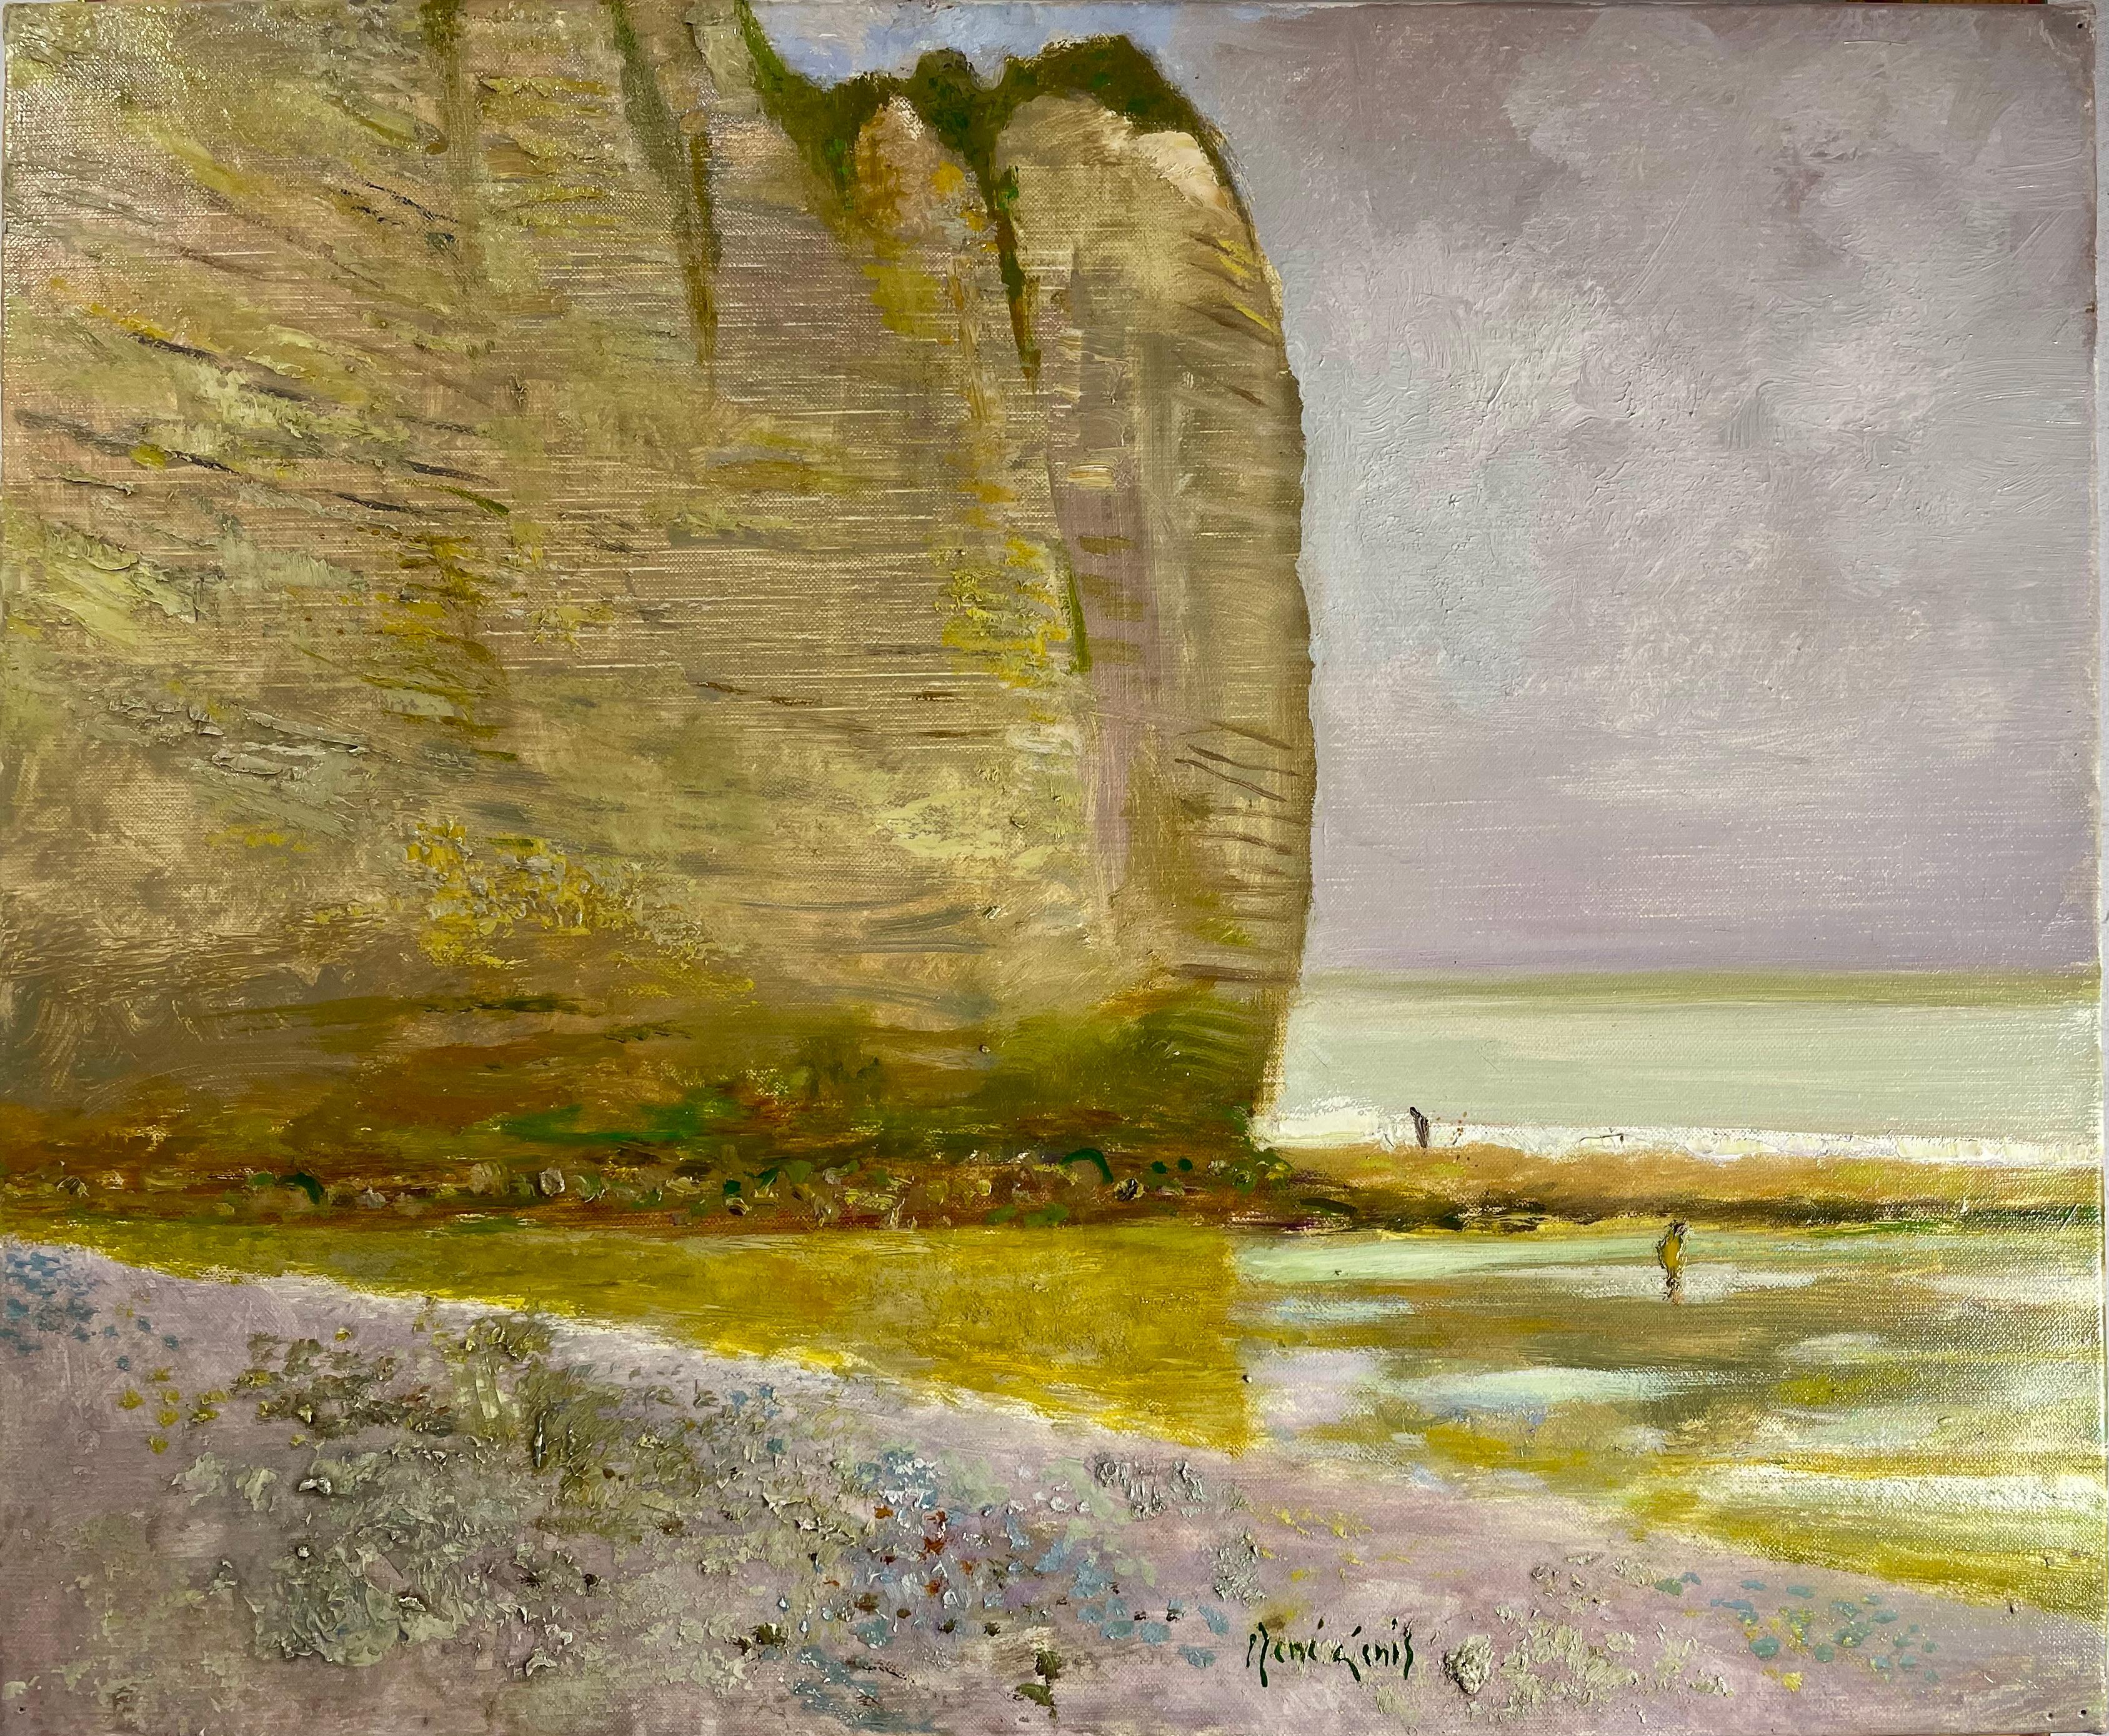 René Genis Landscape Painting - "Les Falaise Normande" (The Cliffs Of Normand)